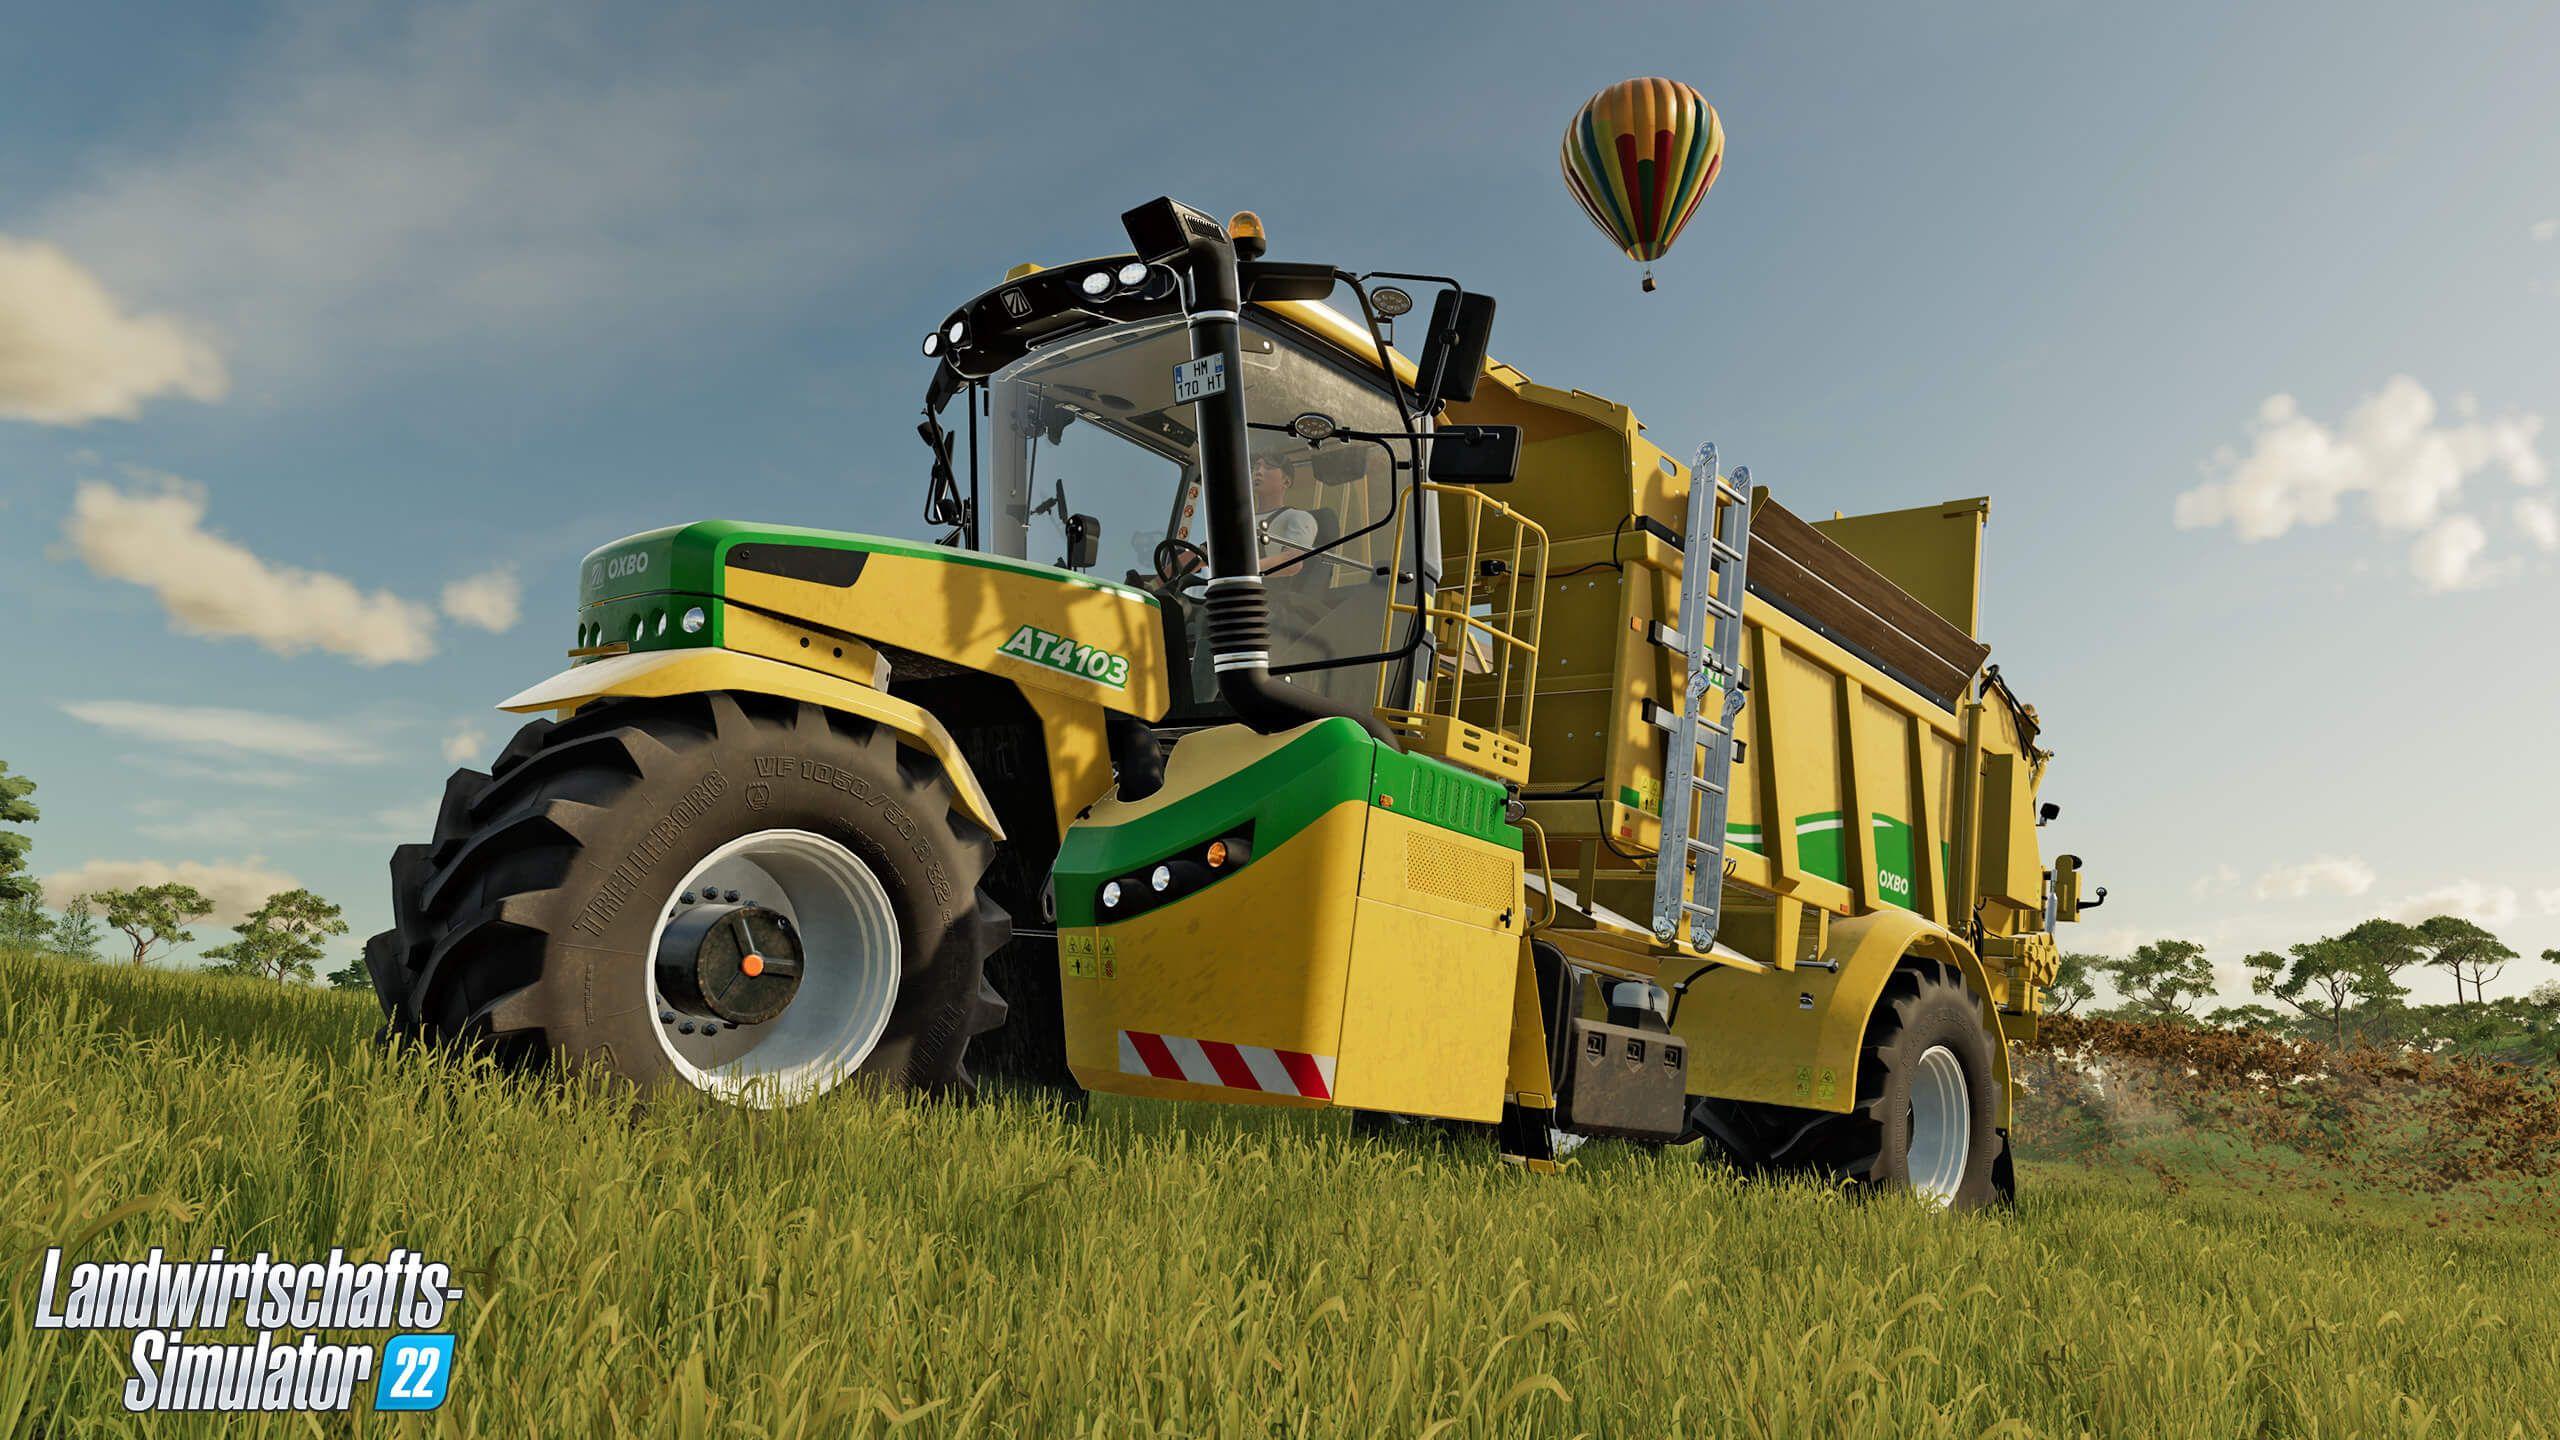 Landwirtschafts-Simulator 22 – Oxbo Pack heute veröffentlicht